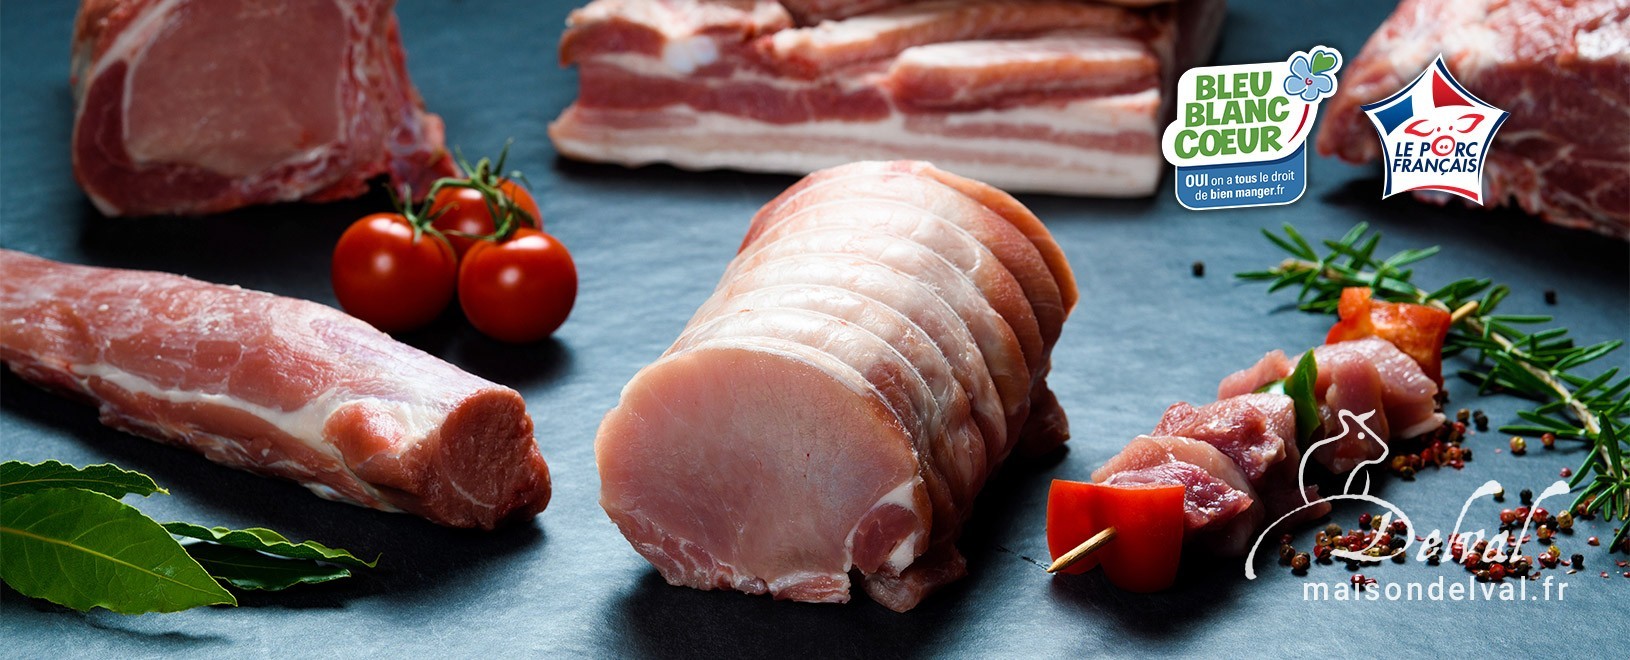 Viande de porc BBC - Vente en ligne - Boucherie Maison Delval